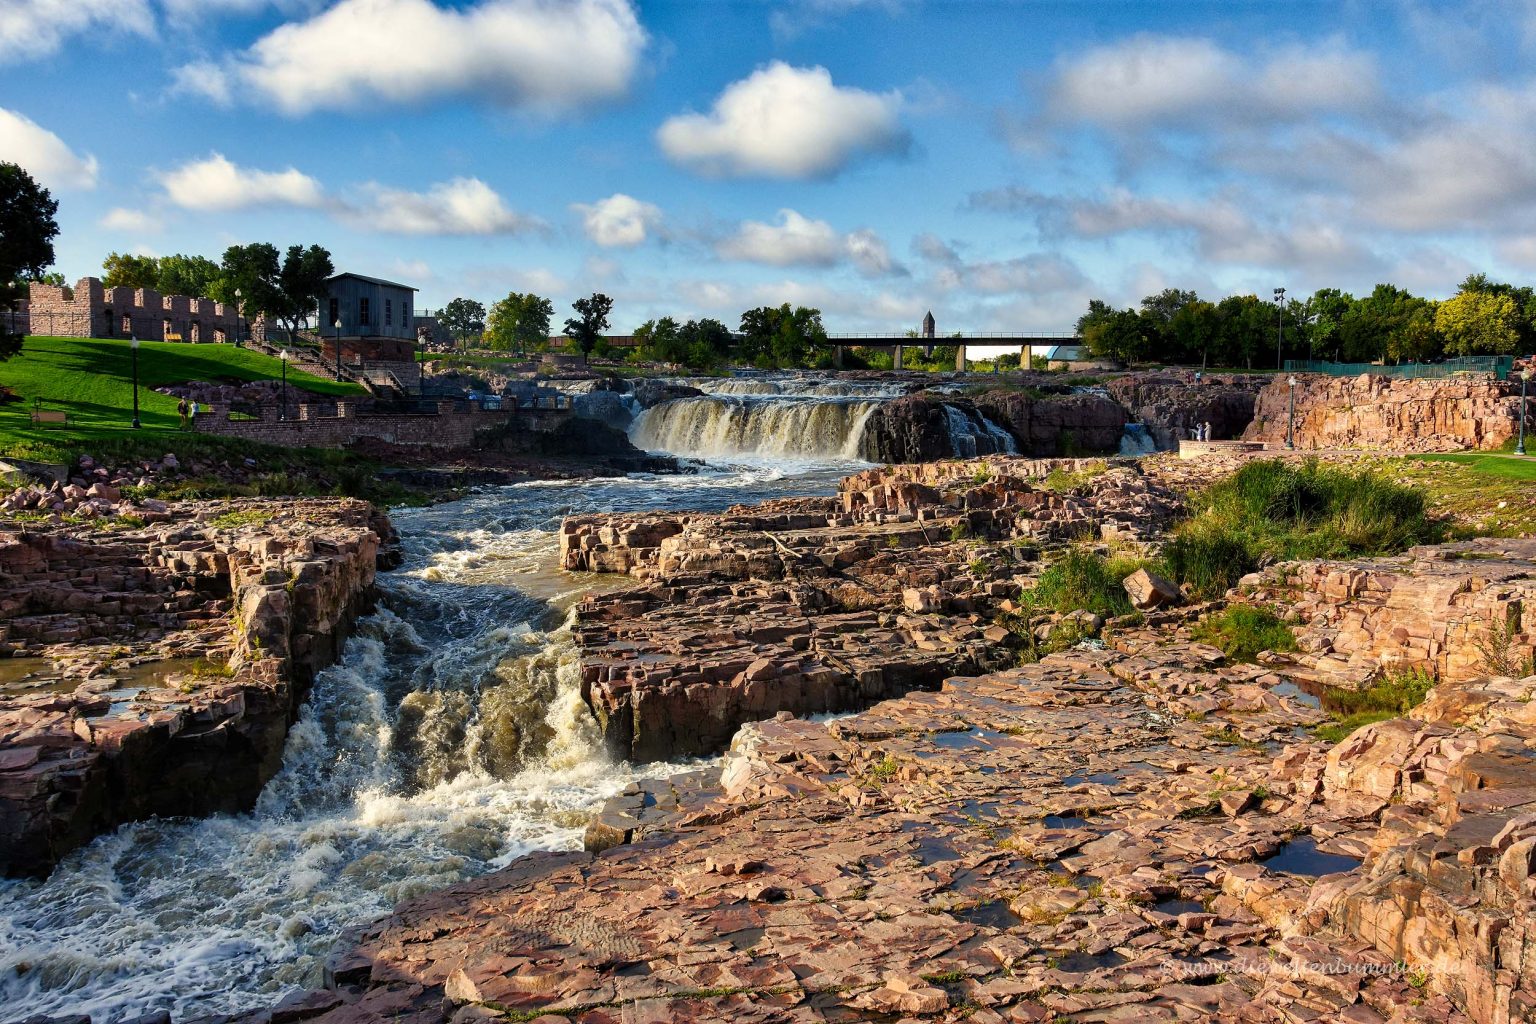 Wasserfälle in Sioux Falls